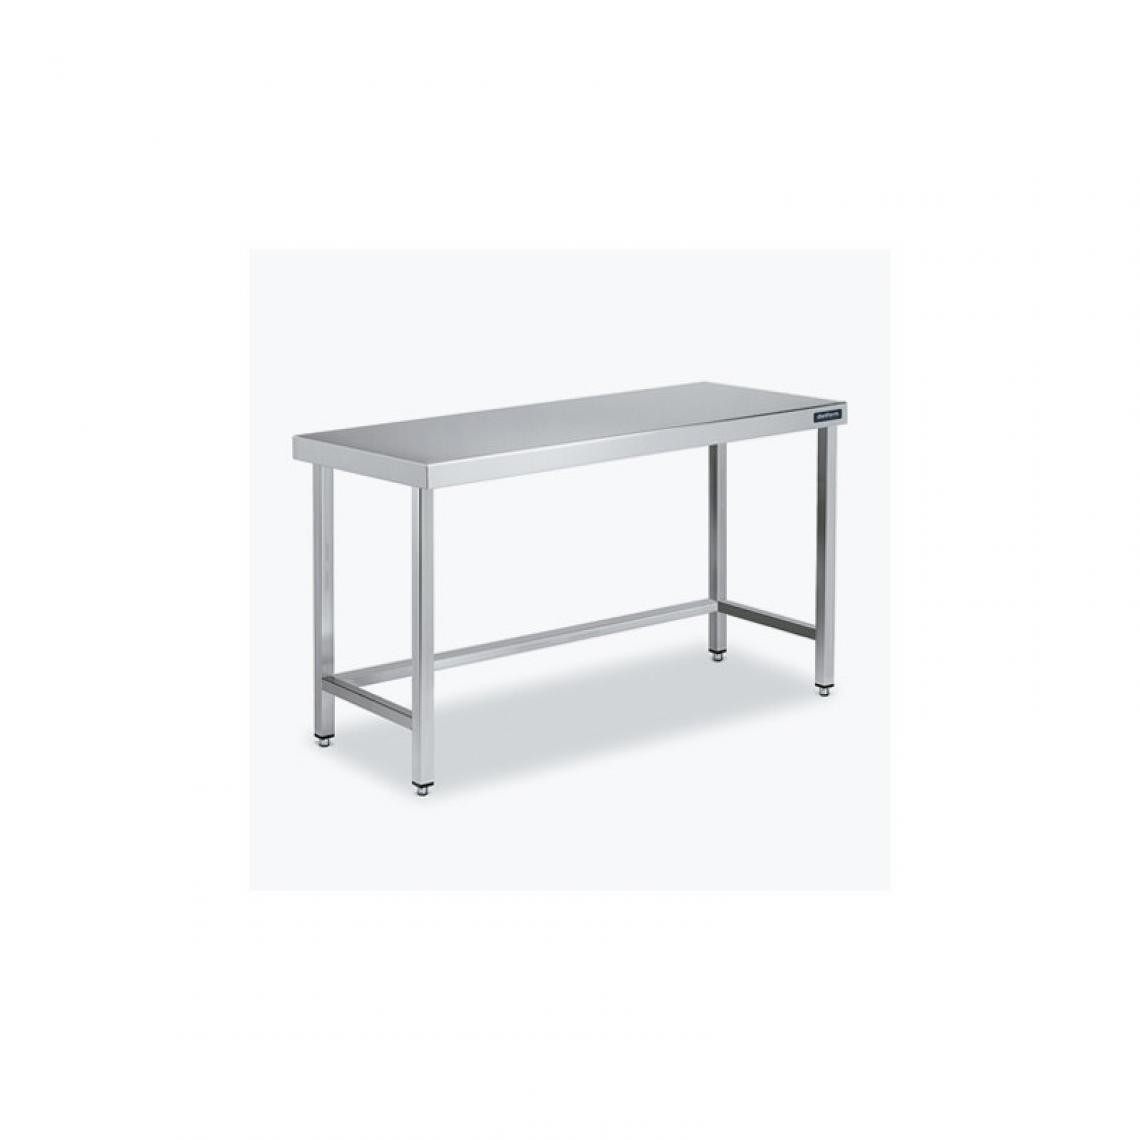 DISTFORM - Table Centrale 600x700X600 avec Renforts - Distform - Inox 18/101100x700x600mm - Tables à manger